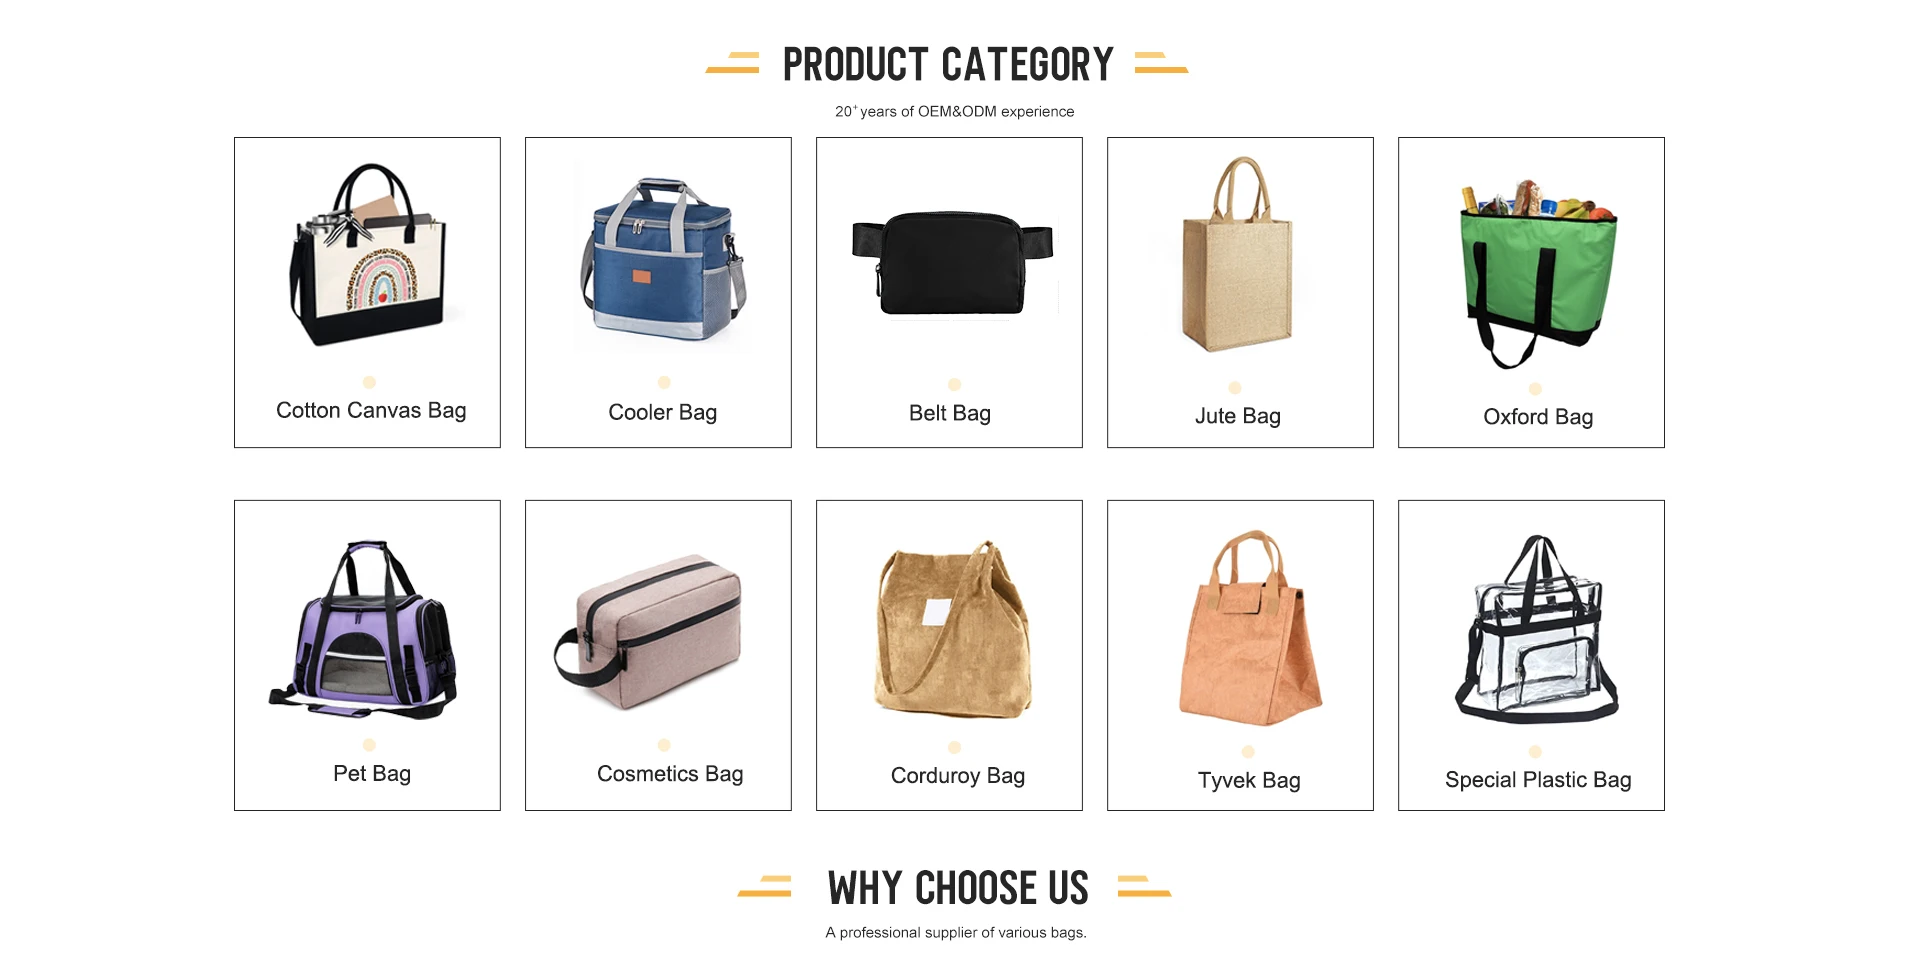 Zhejiang Wangxiang International Trading Co., Ltd. - Cotton bag, Travel bag